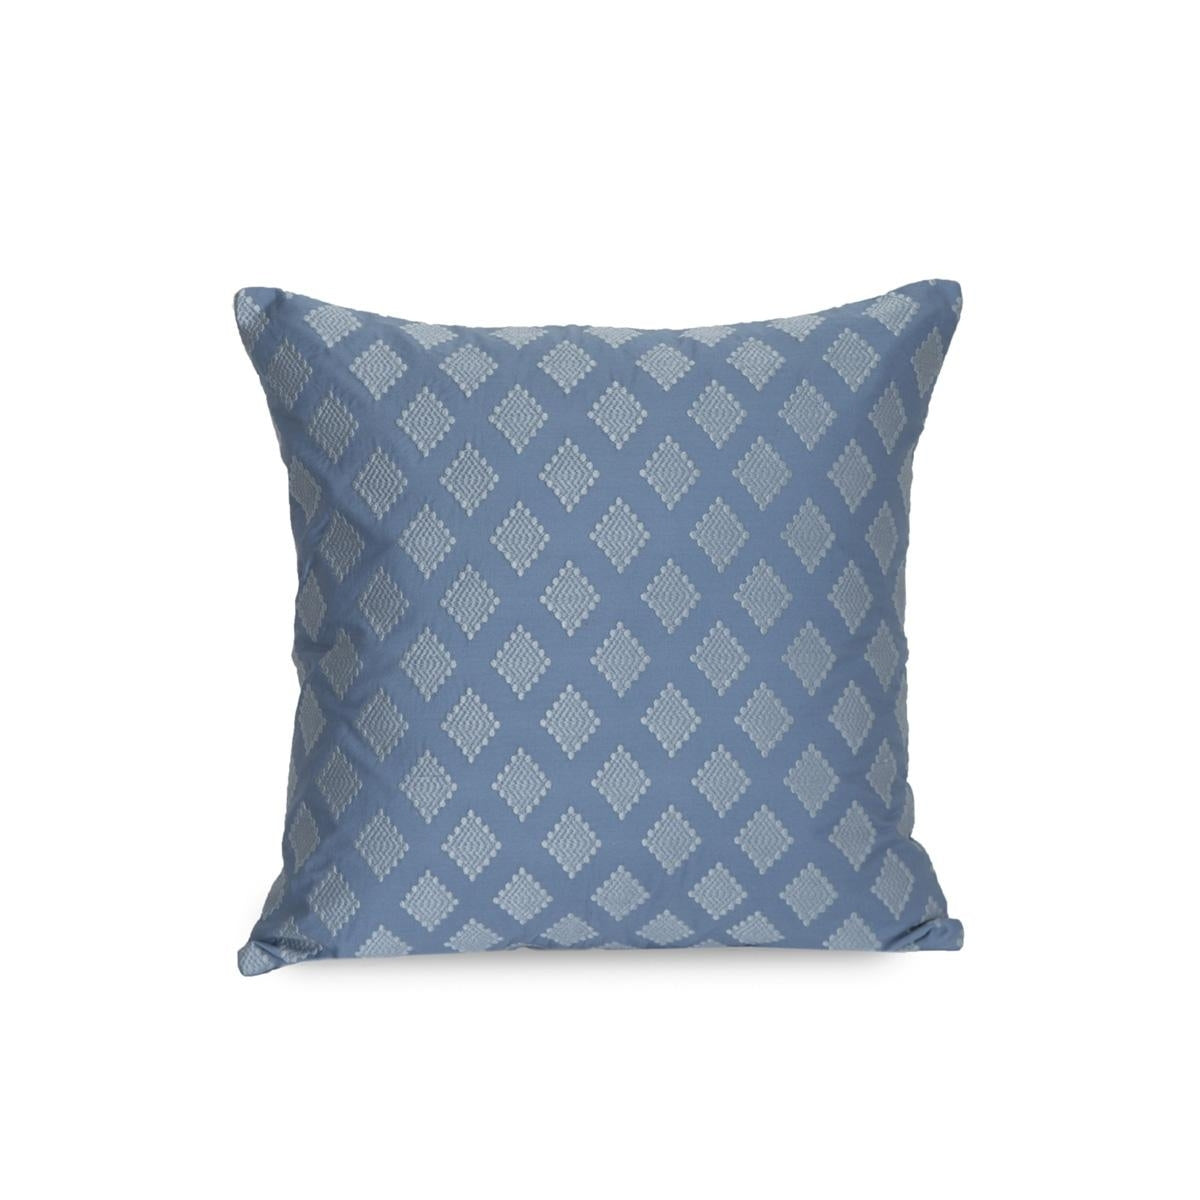 Sonnet Blue Medium 50x50 Cm Embroidery Machine Cushion Cover